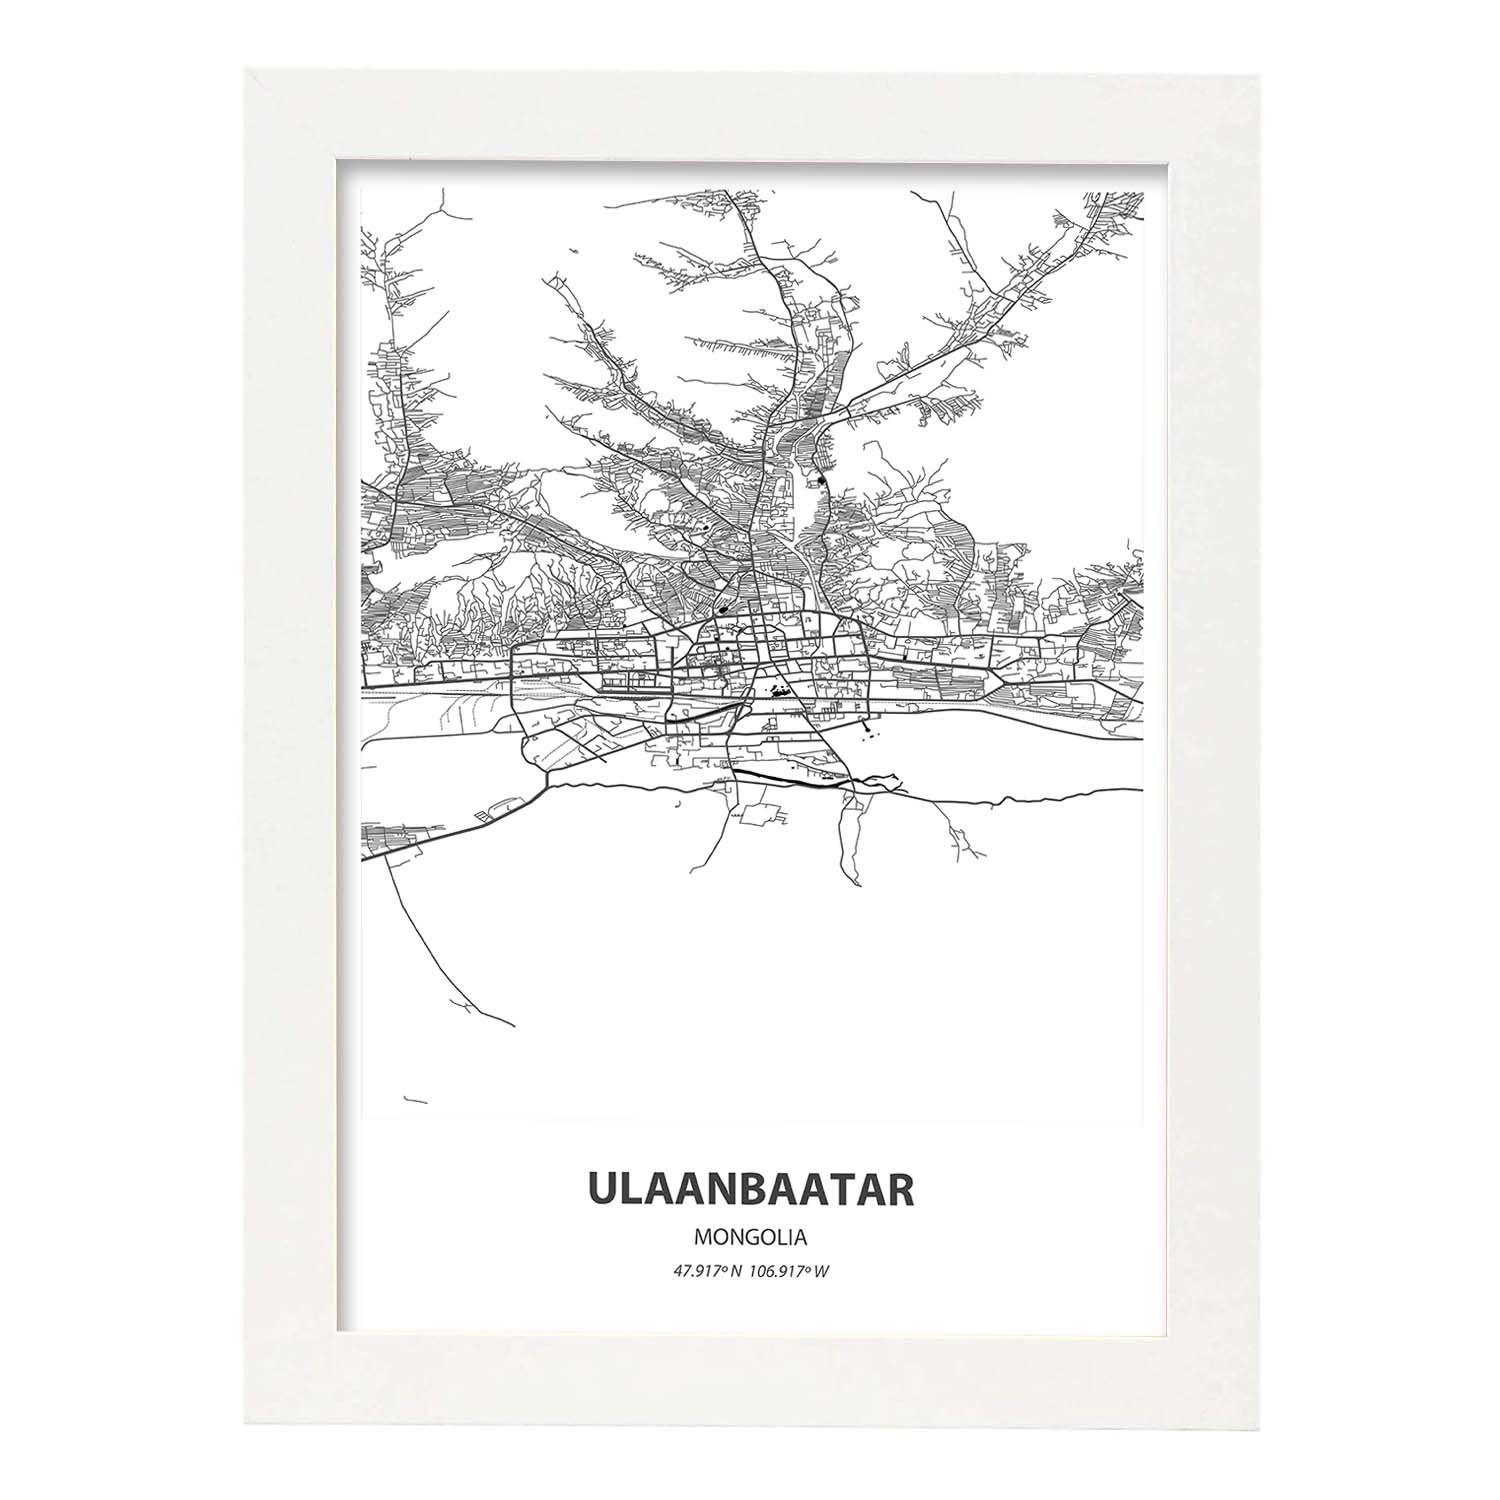 Poster con mapa de Ulaanbaatar - Mongolia. Láminas de ciudades de Asia con mares y ríos en color negro.-Artwork-Nacnic-A4-Marco Blanco-Nacnic Estudio SL